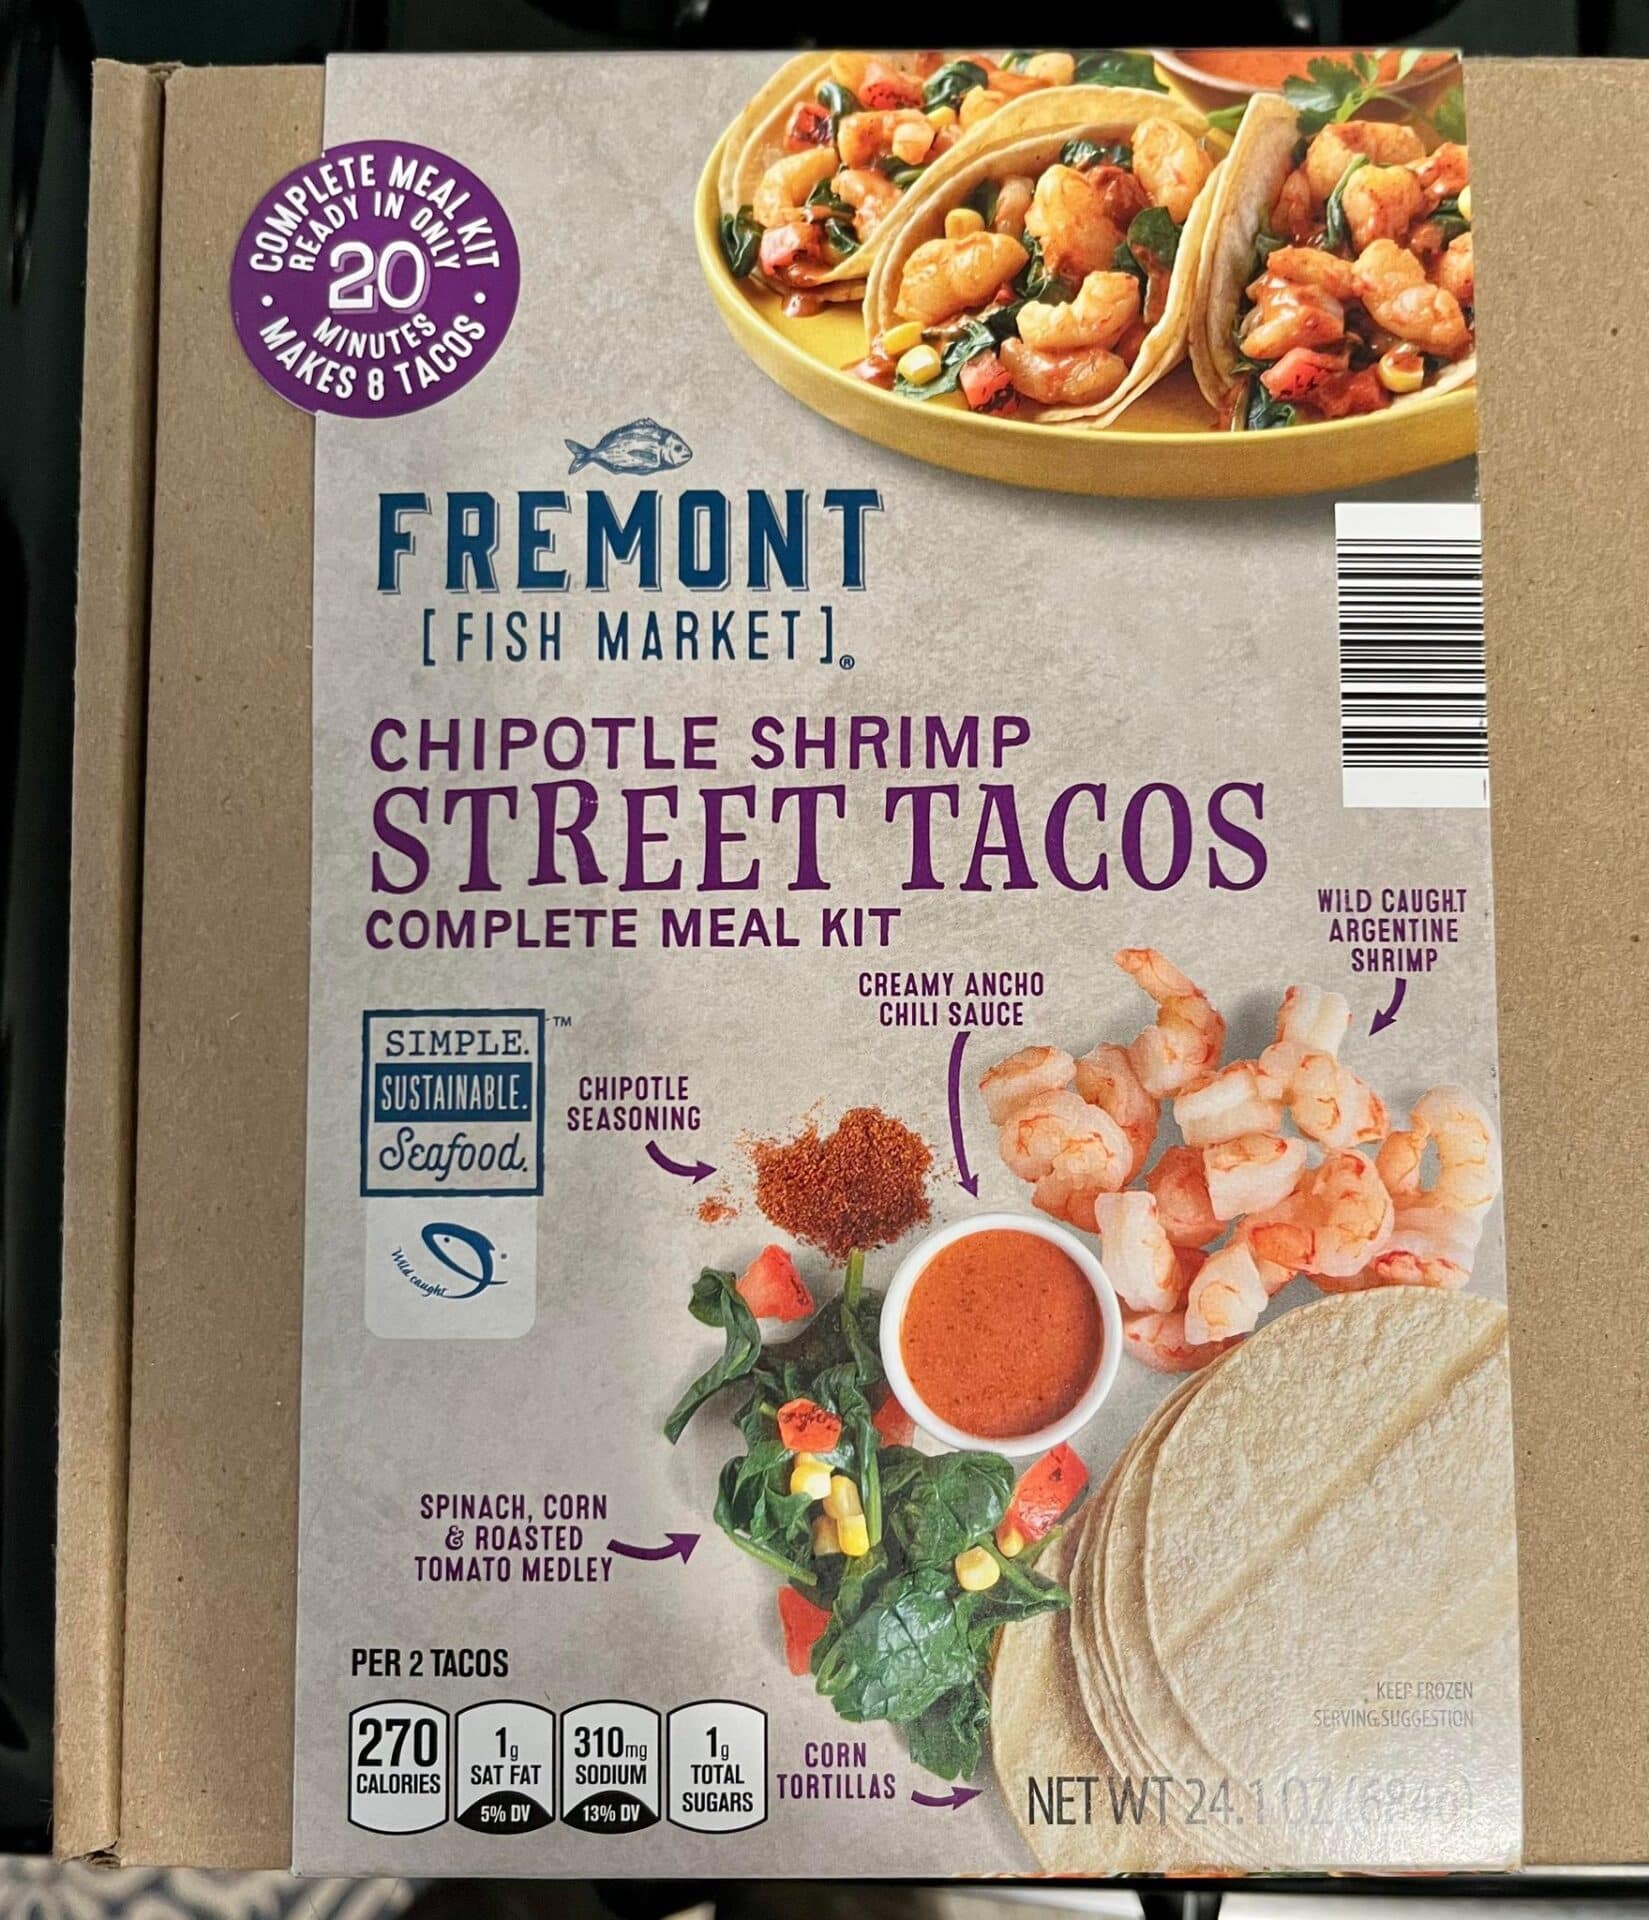 Fremont Fish Market Chipotle Shrimp Street Tacos Complete Meal Kit